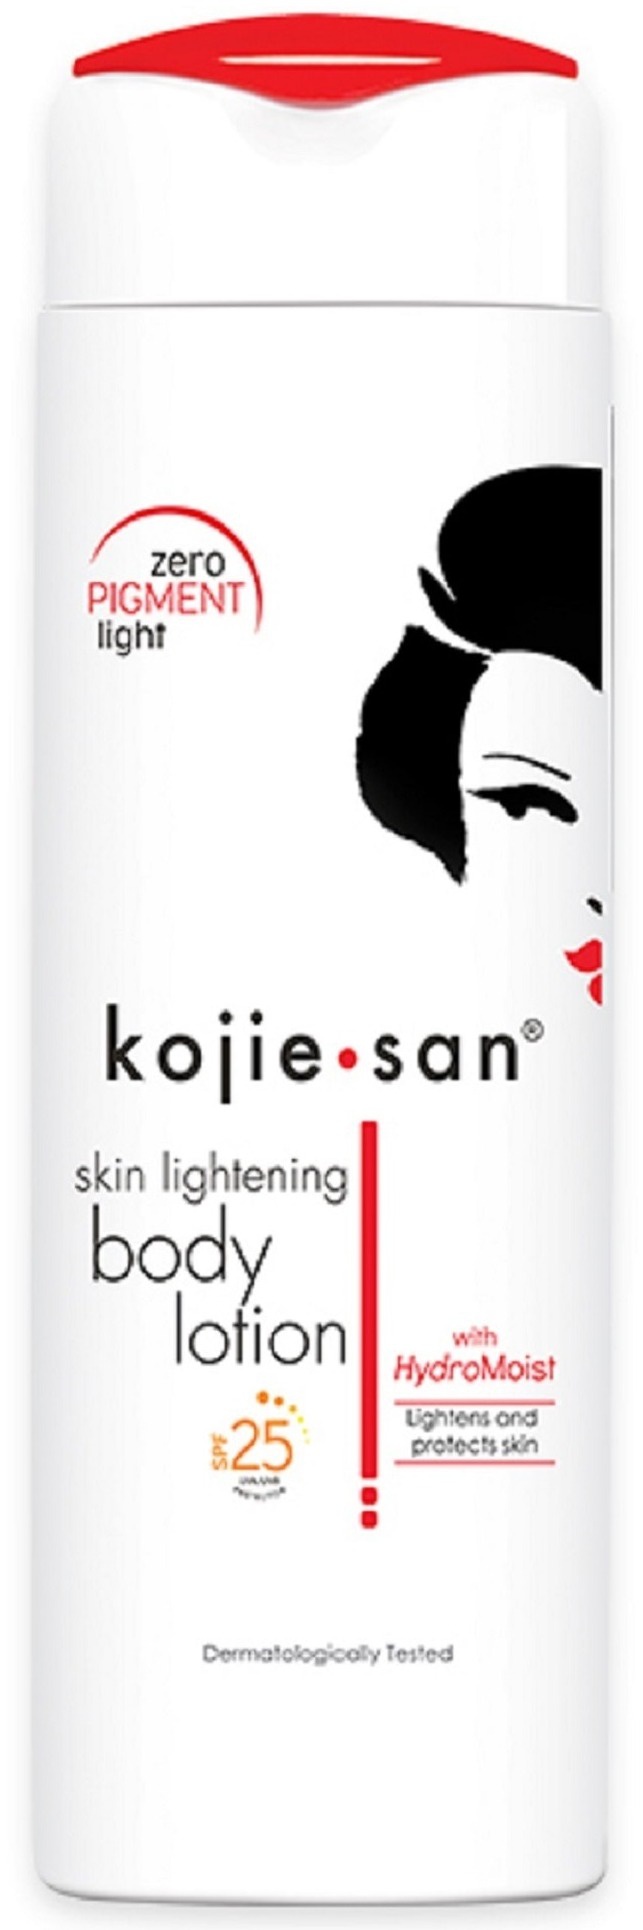 Kojie san Skin Lightening Body Lotion SPF 25